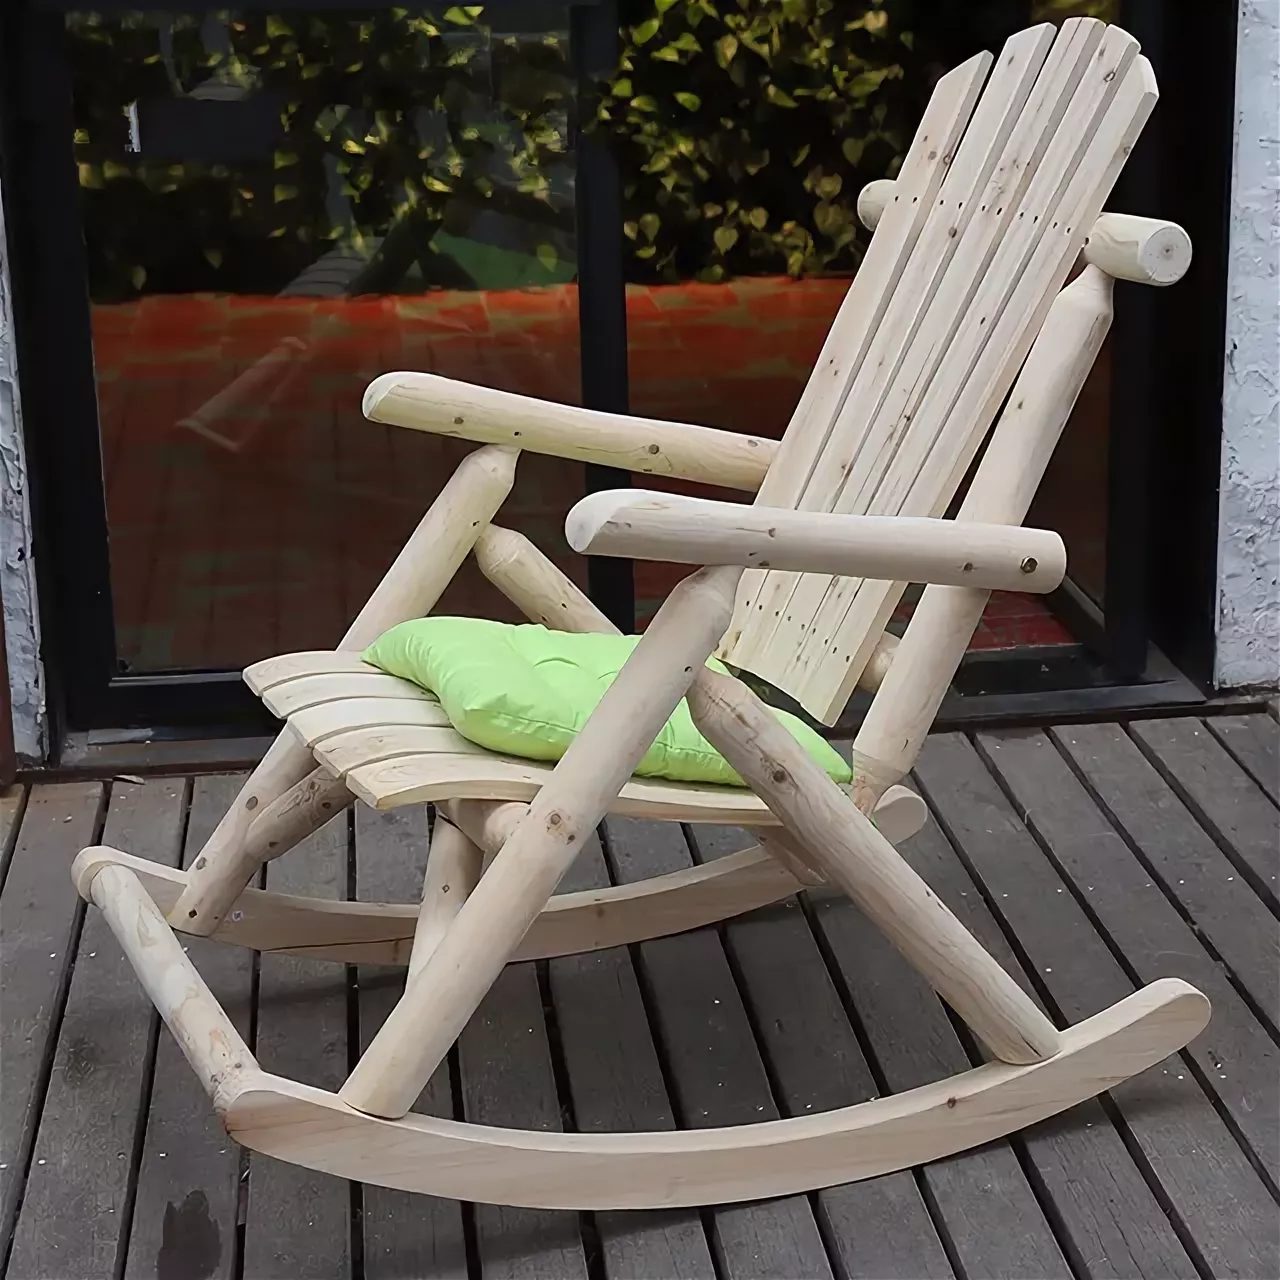 Садовое деревянное кресло, сделанное своими руками